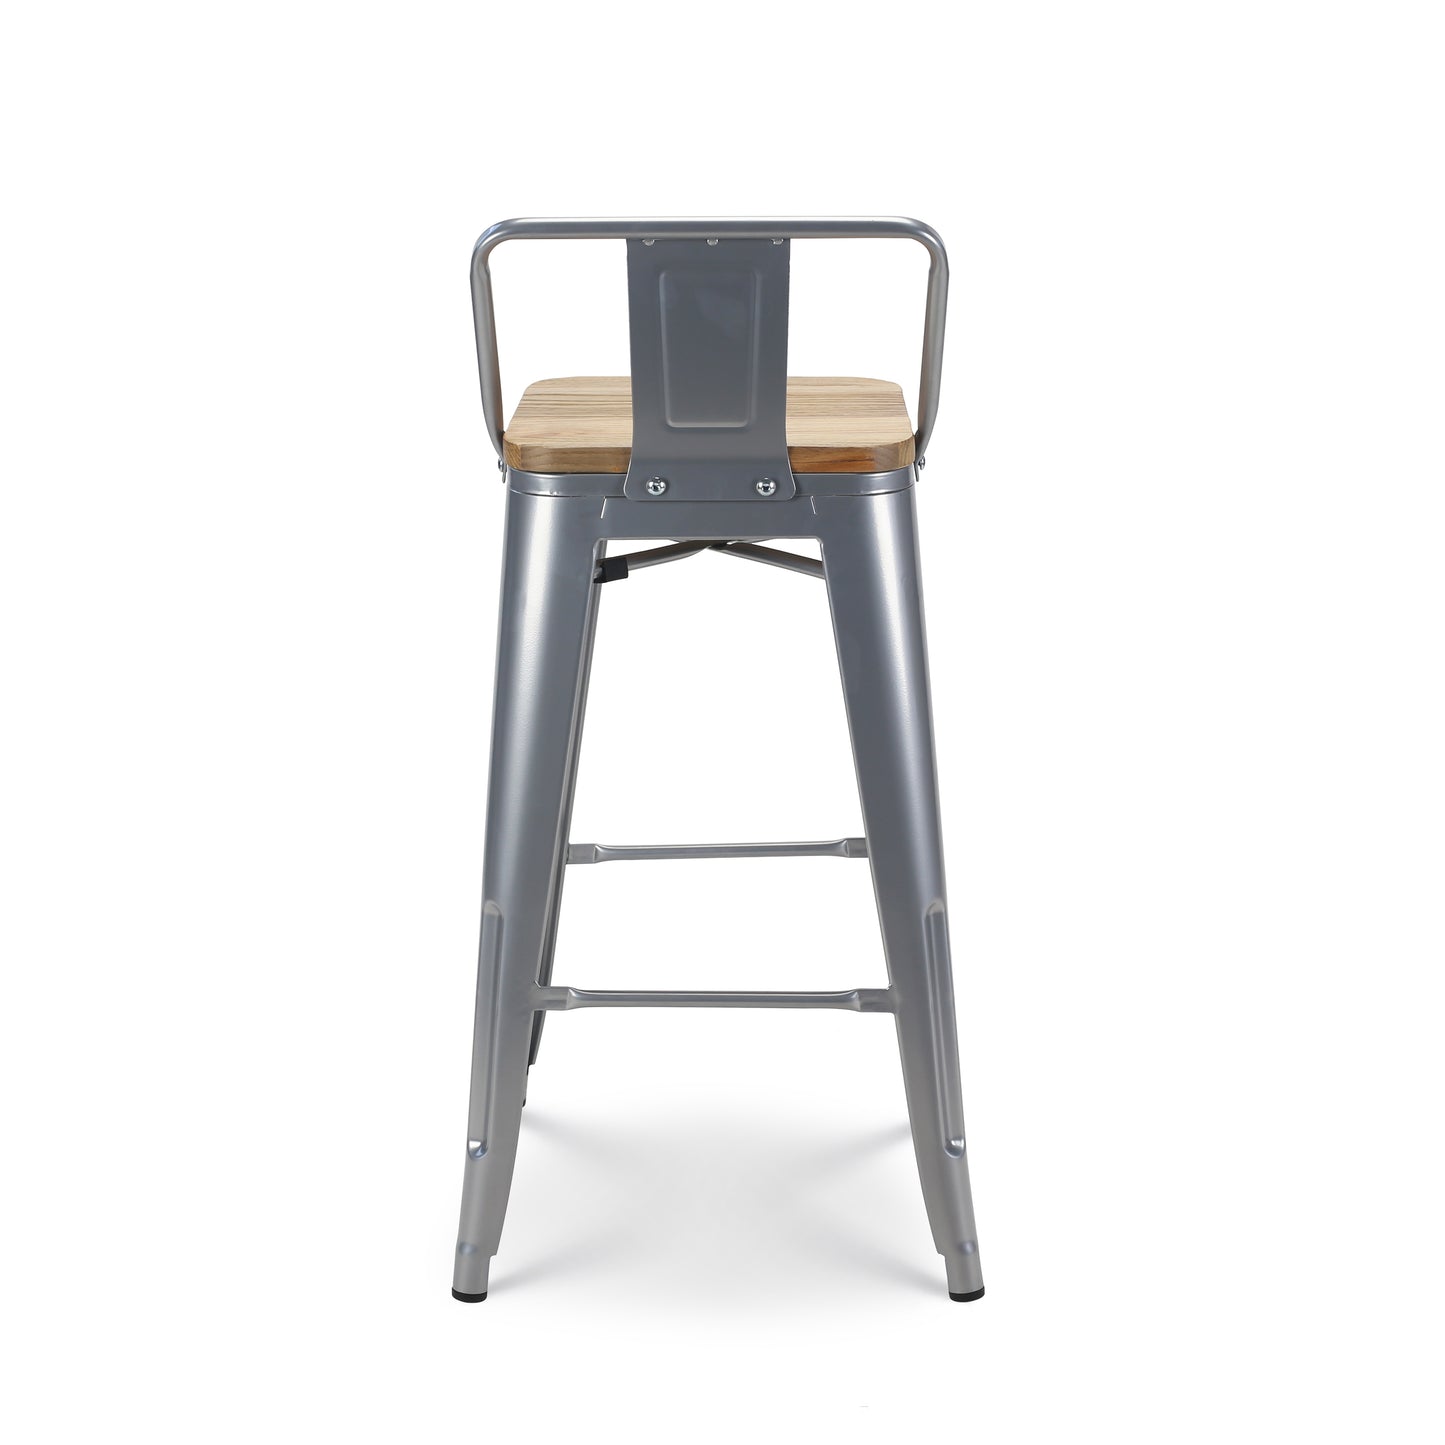 Tabouret de bar en métal gris argenté style industriel avec dossier et assise en bois clair - Hauteur 66 cm